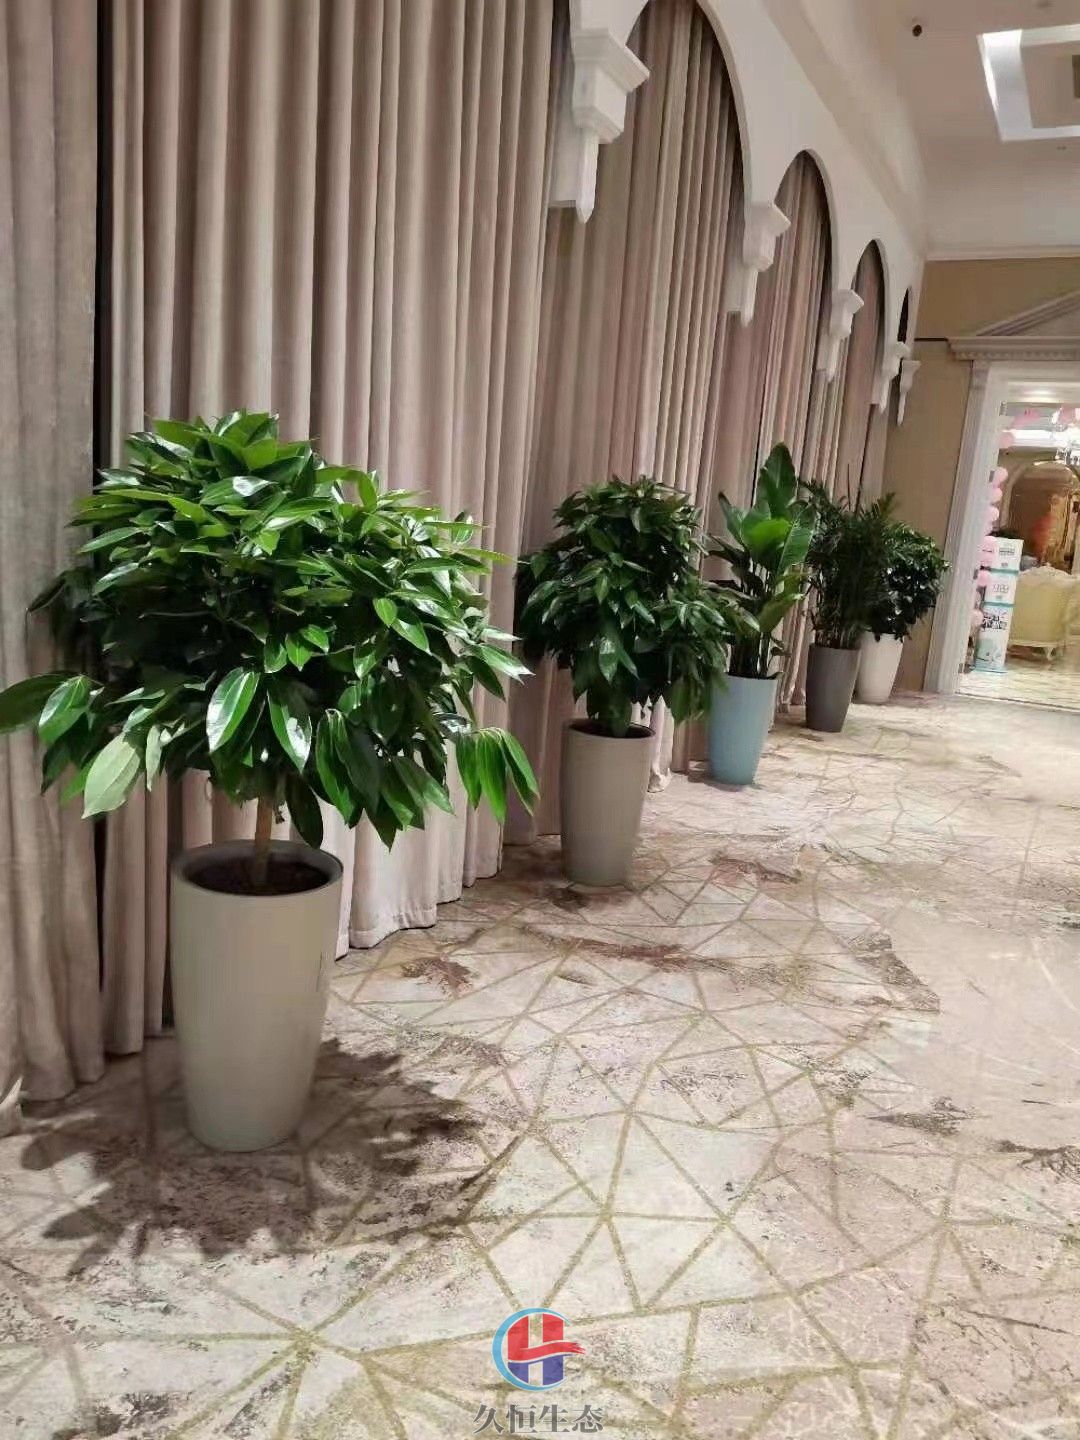 酒店走廊花卉绿植摆放